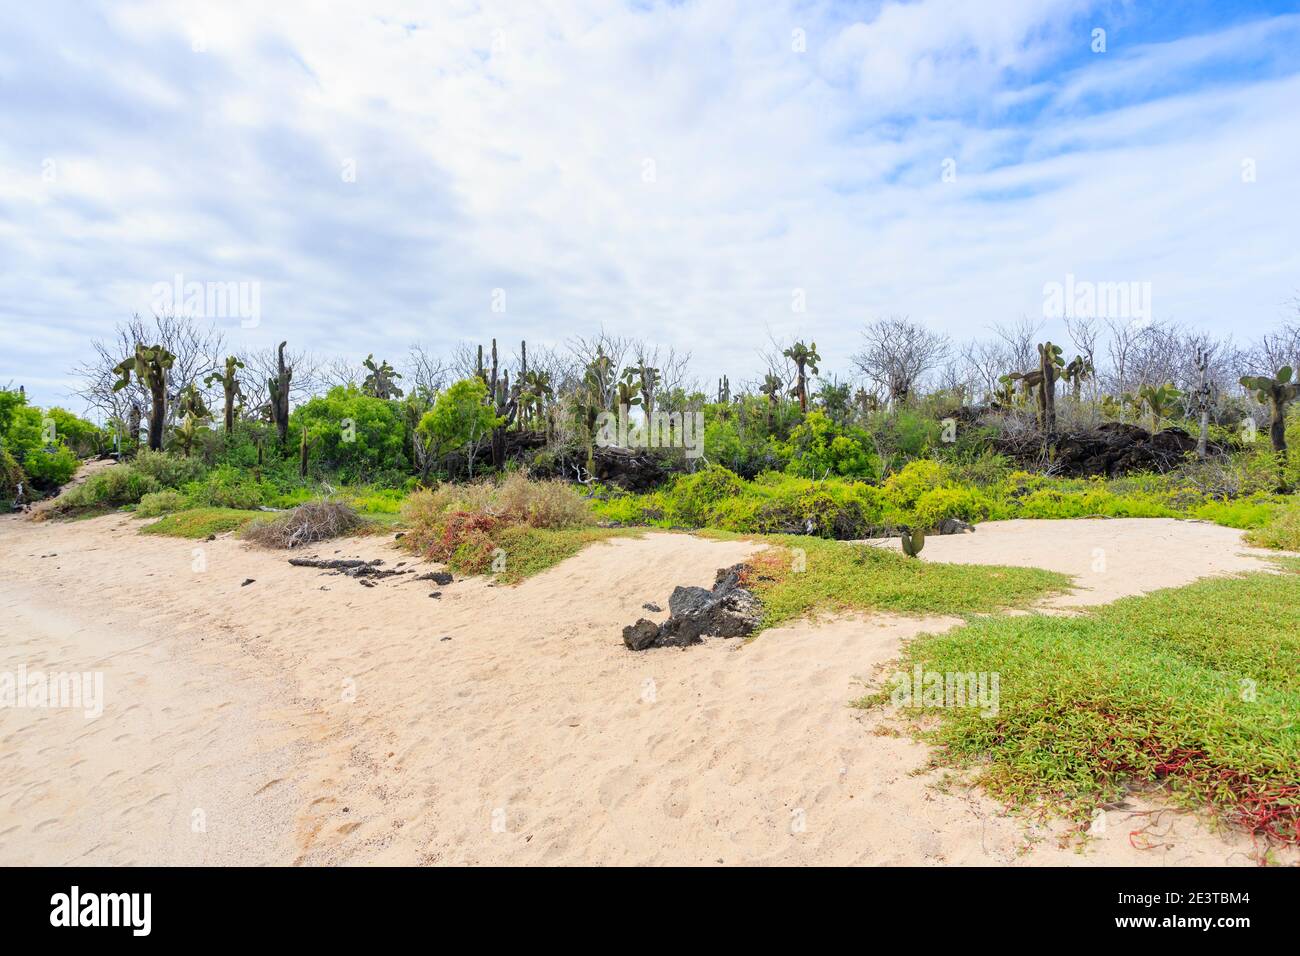 Spiaggia sabbiosa e vegetazione tipica del litorale con cespugli di cactus di Opuntia a Dragon Hill, Isola di Santa Cruz, Isole Galapagos, Ecuador, Sud America Foto Stock